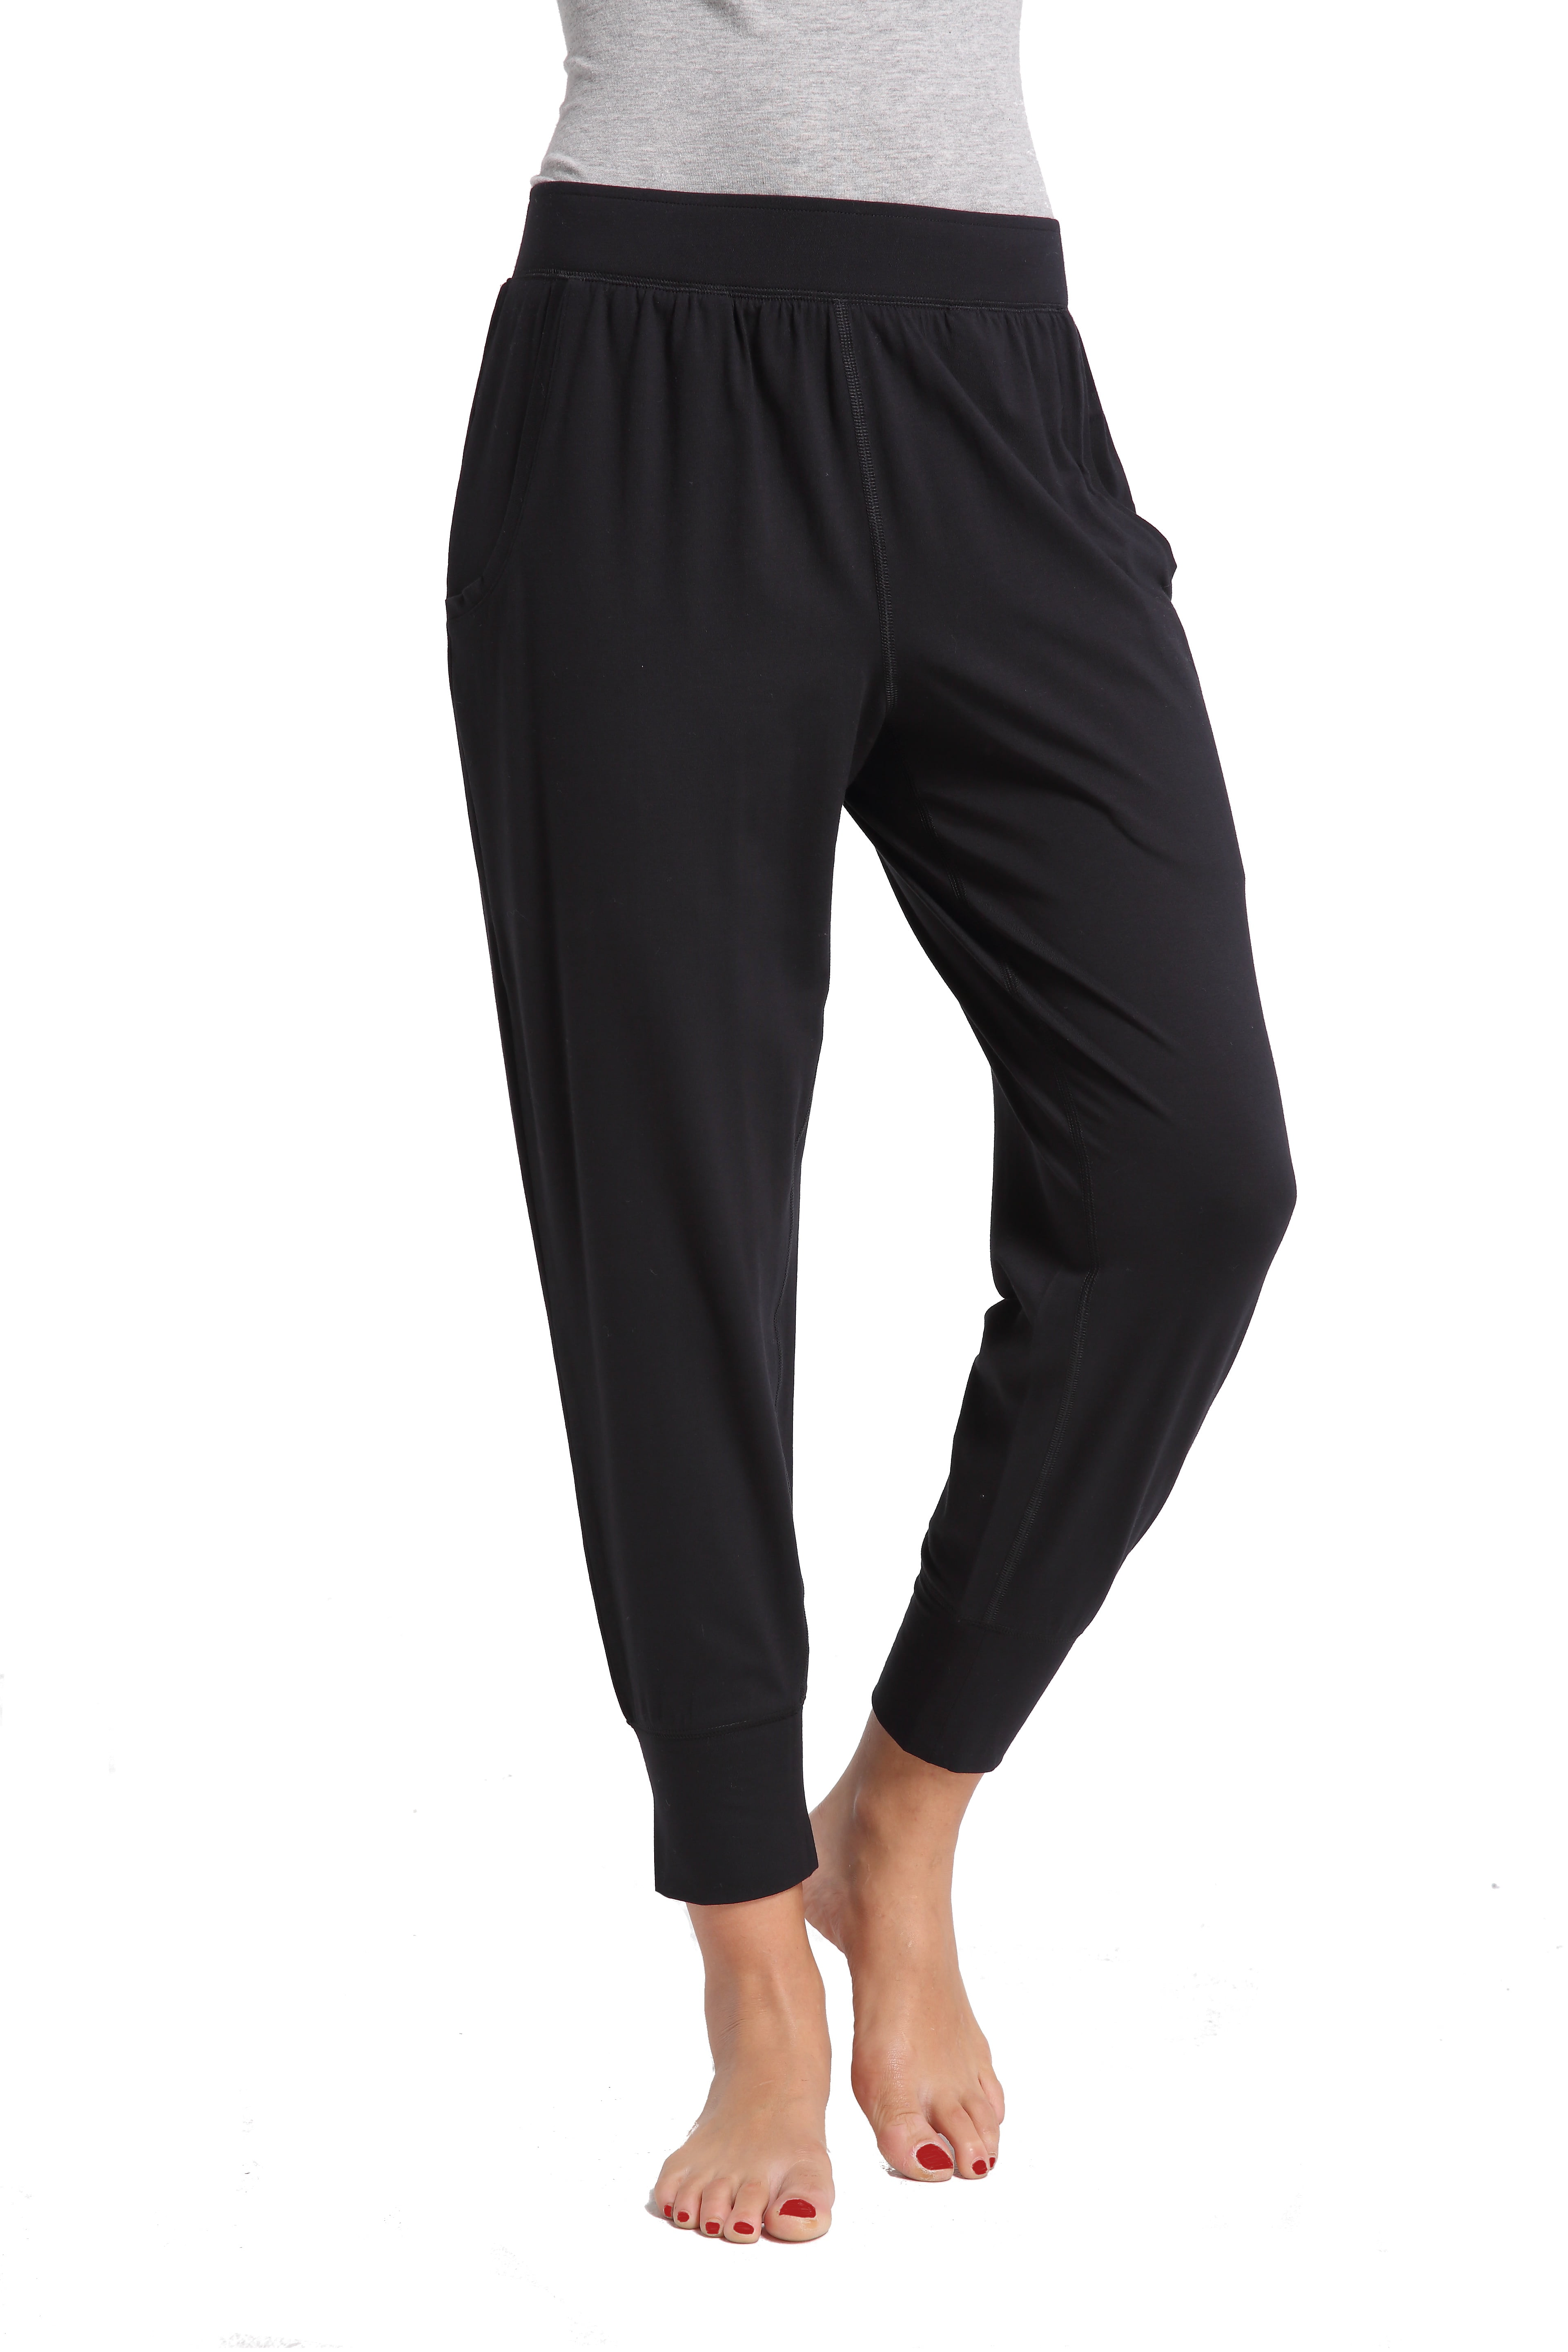 CYZ Women's Cotton Stretch Knit Pajamas Jogger Pants/Lounge Pants ...